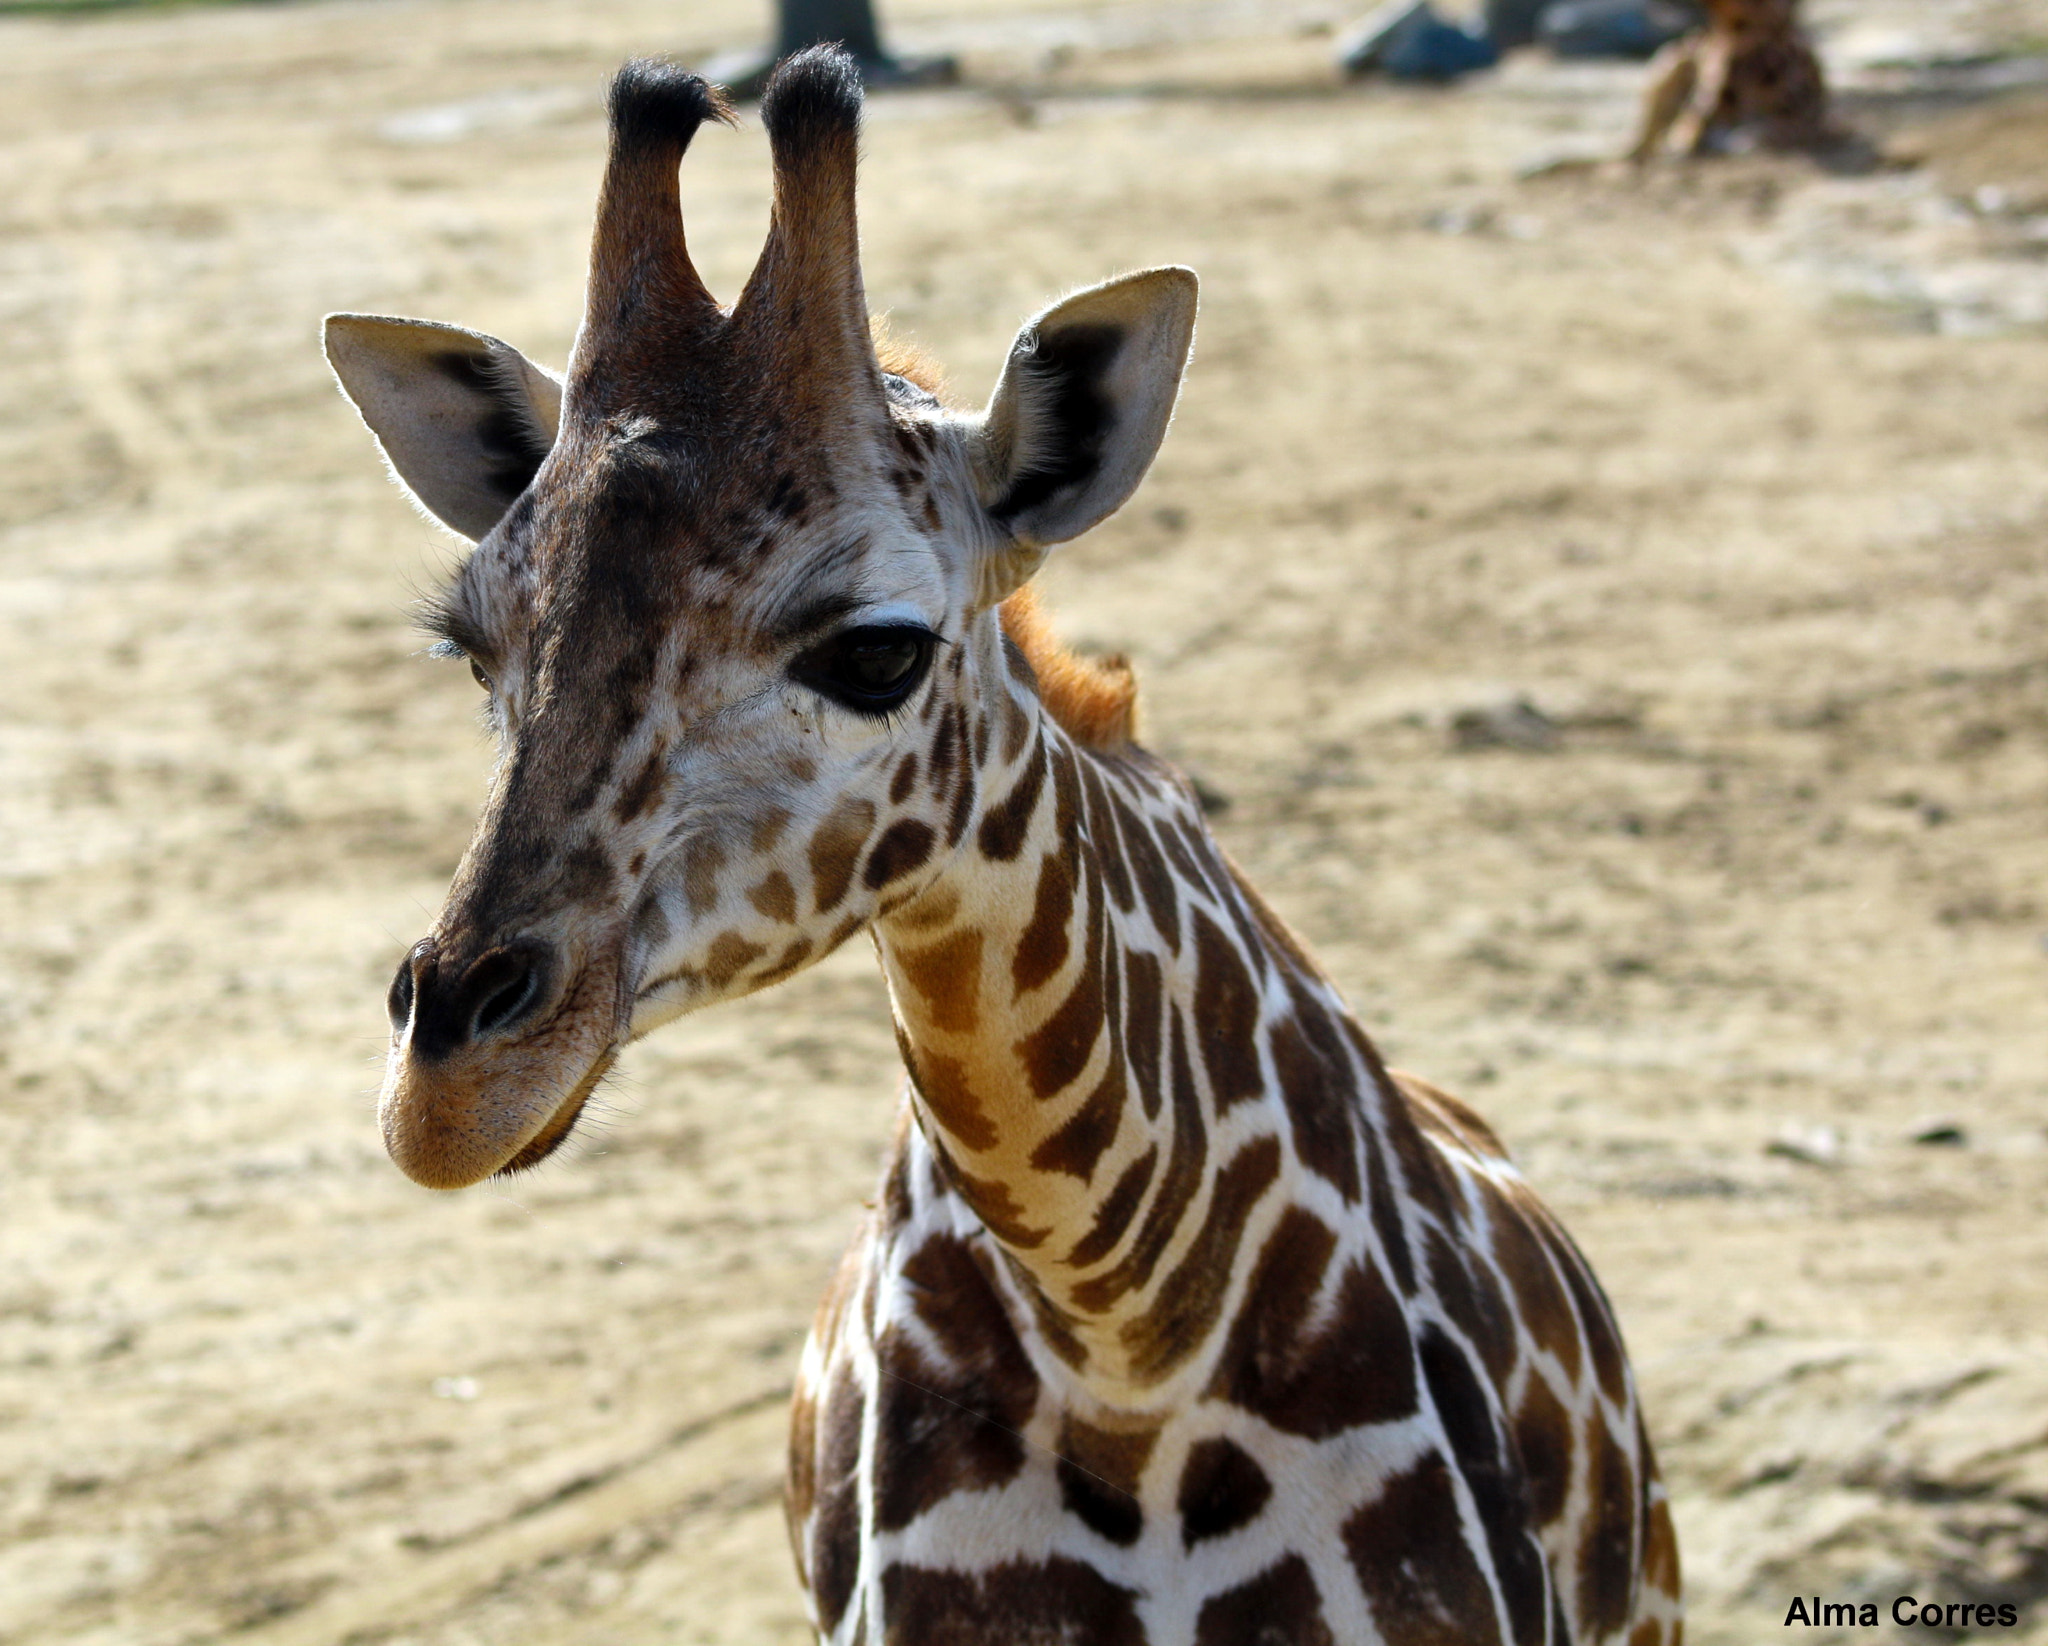 Canon EOS 70D sample photo. Baby giraffe photography